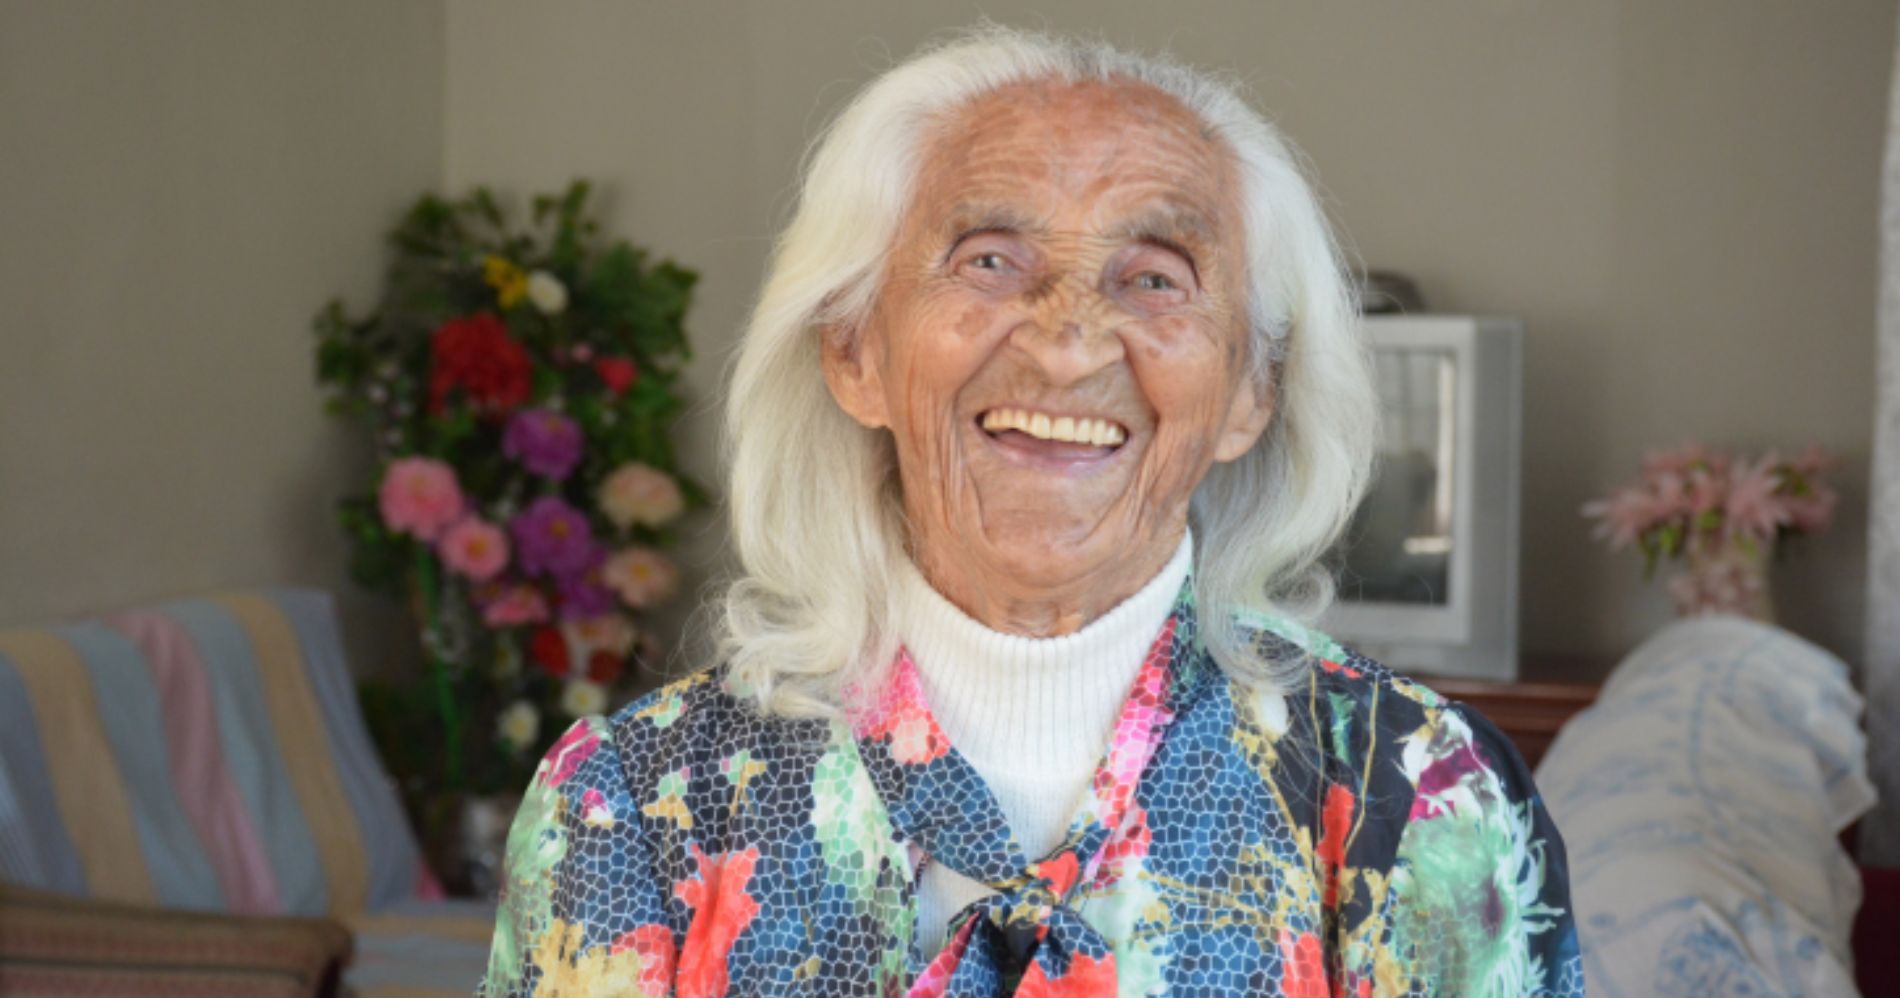 Dona Maria comemora 108 anos de uma vida repleta de determinação